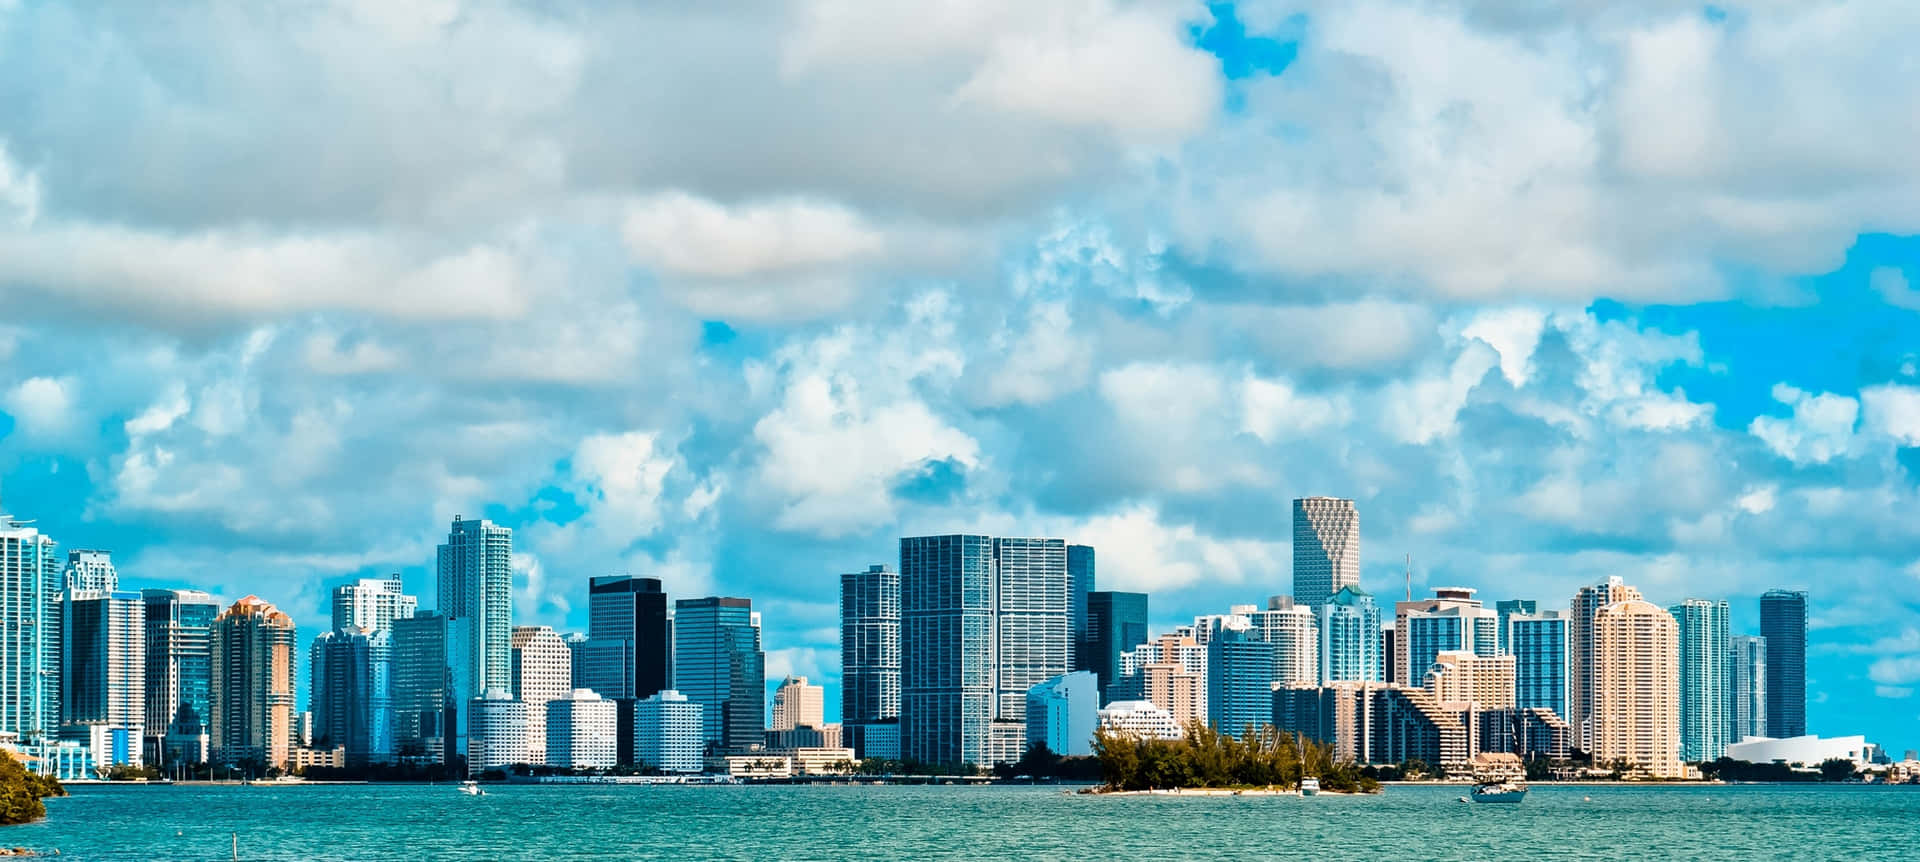 Modern Architecture of Miami City